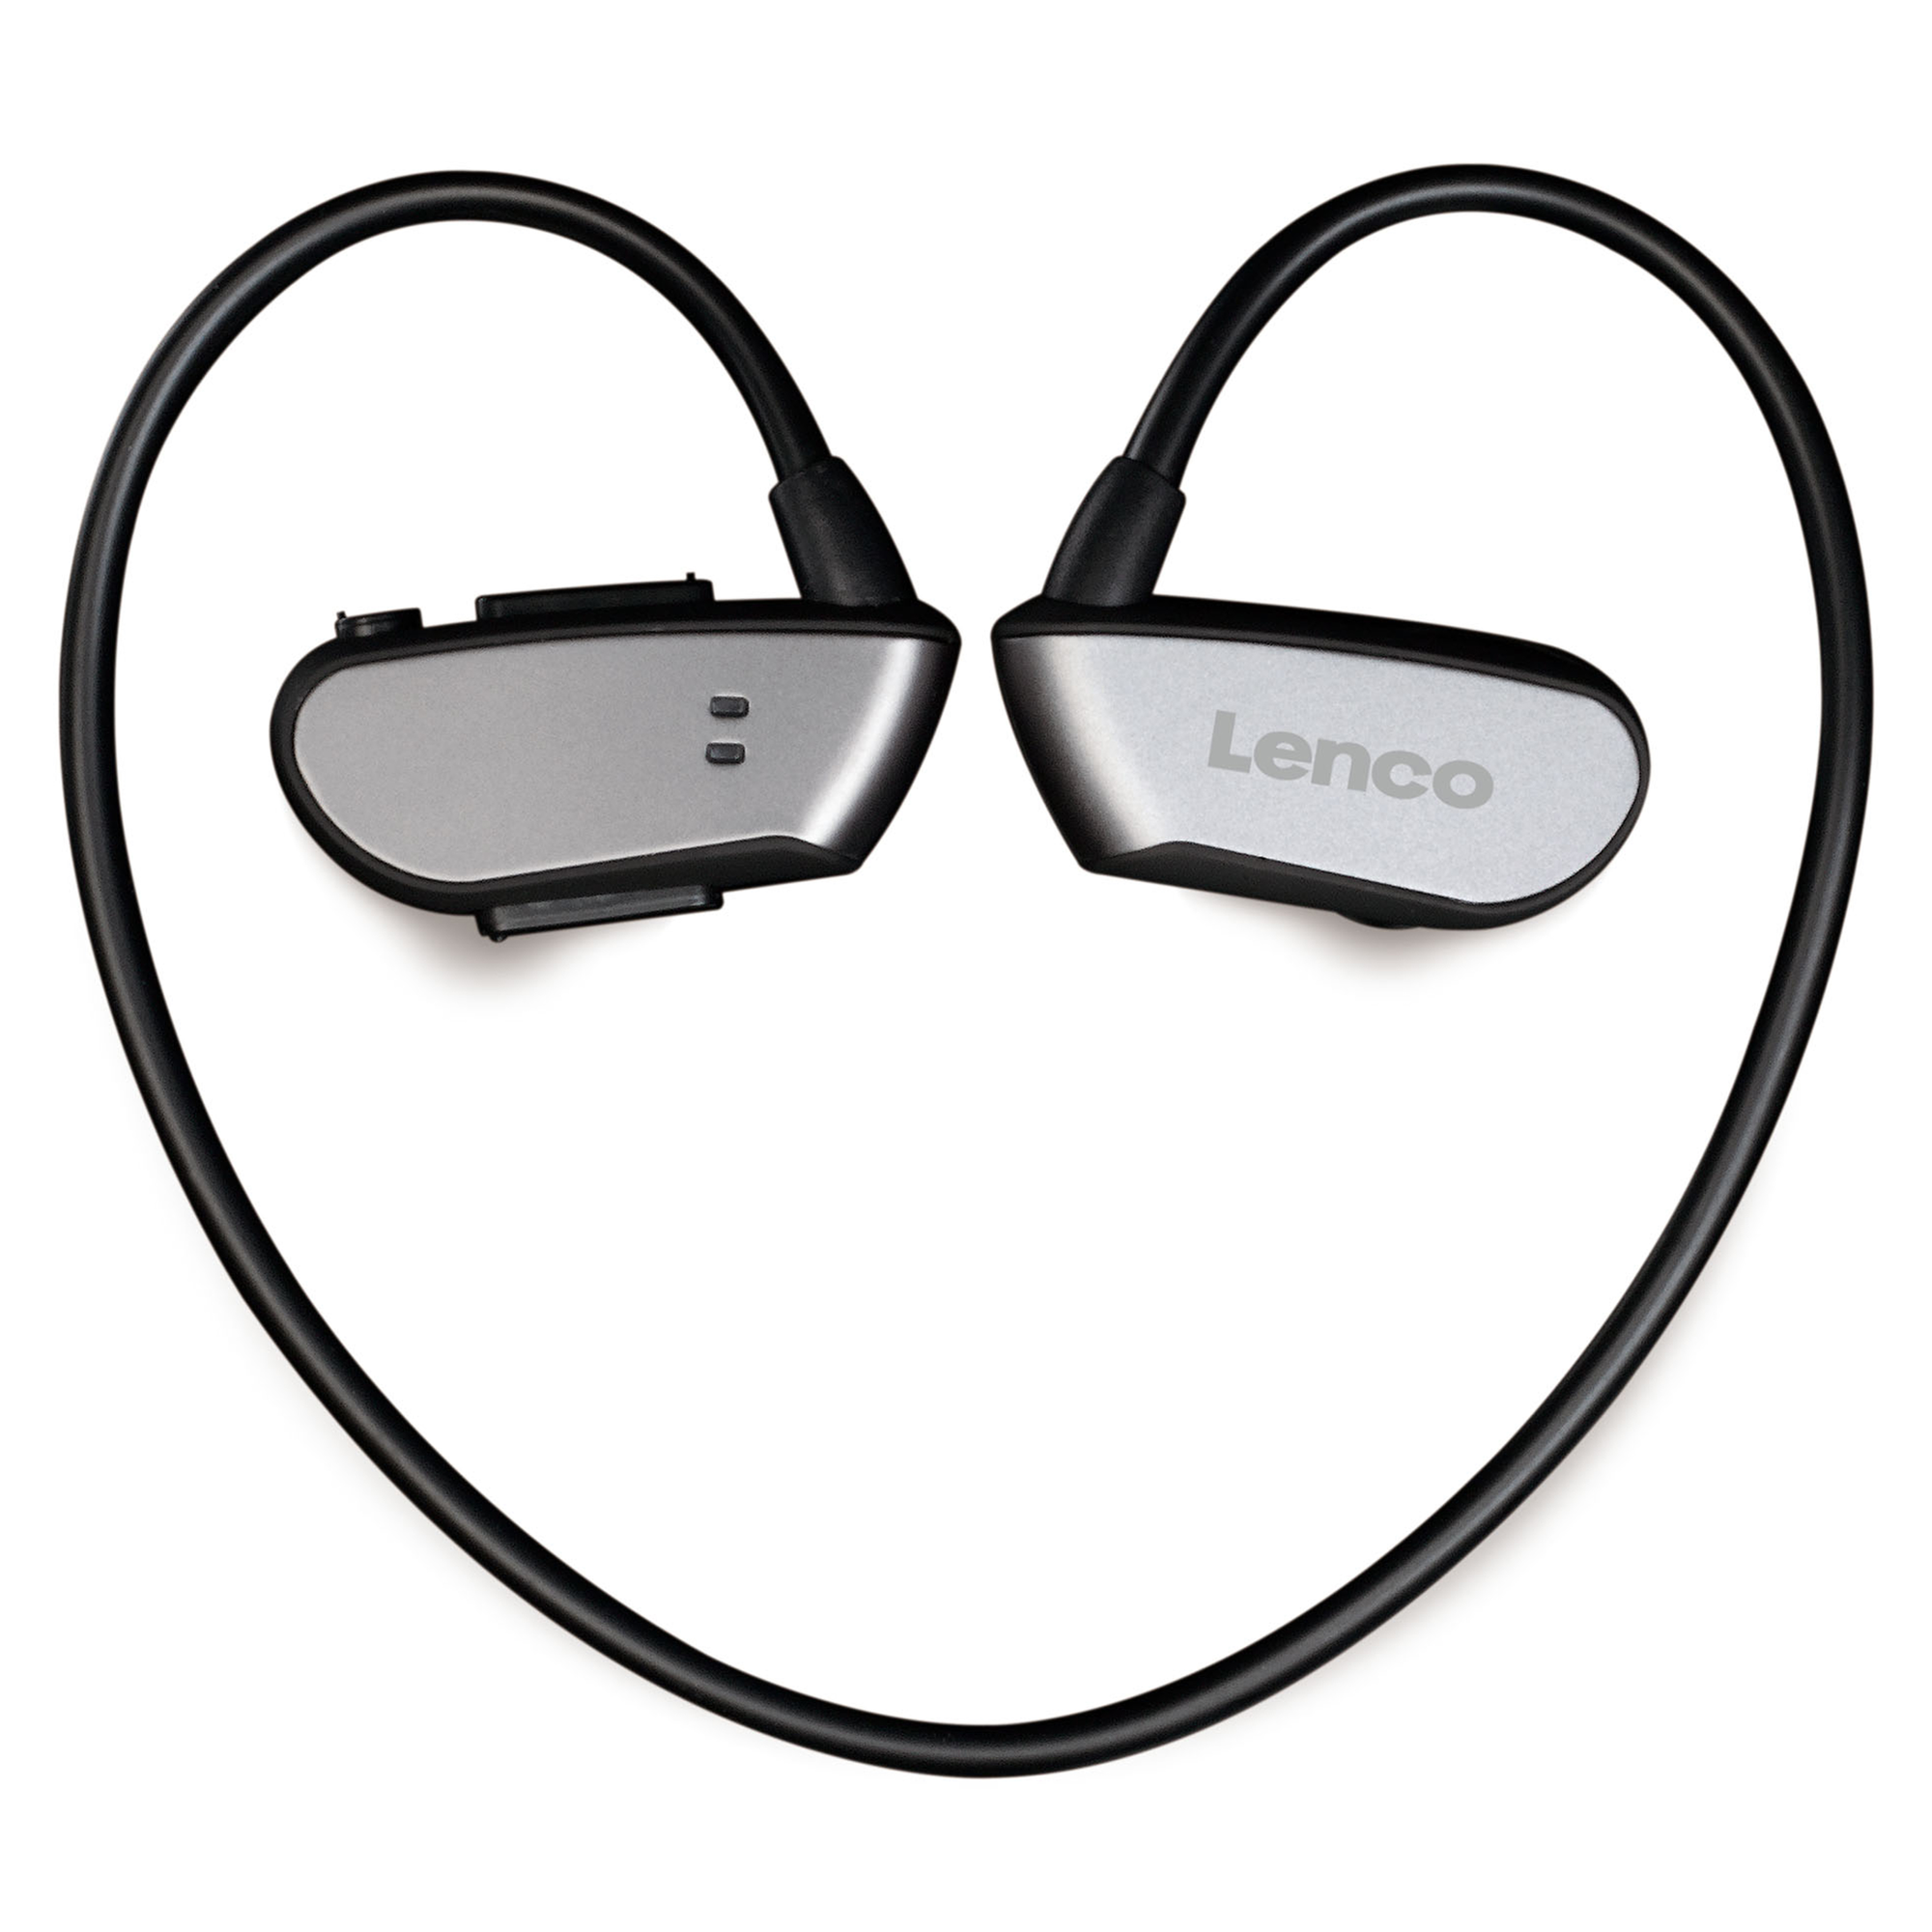 LENCO BTX-860BK, In-ear Bluetooth Bluetooth Schwarz-Grau Headphone